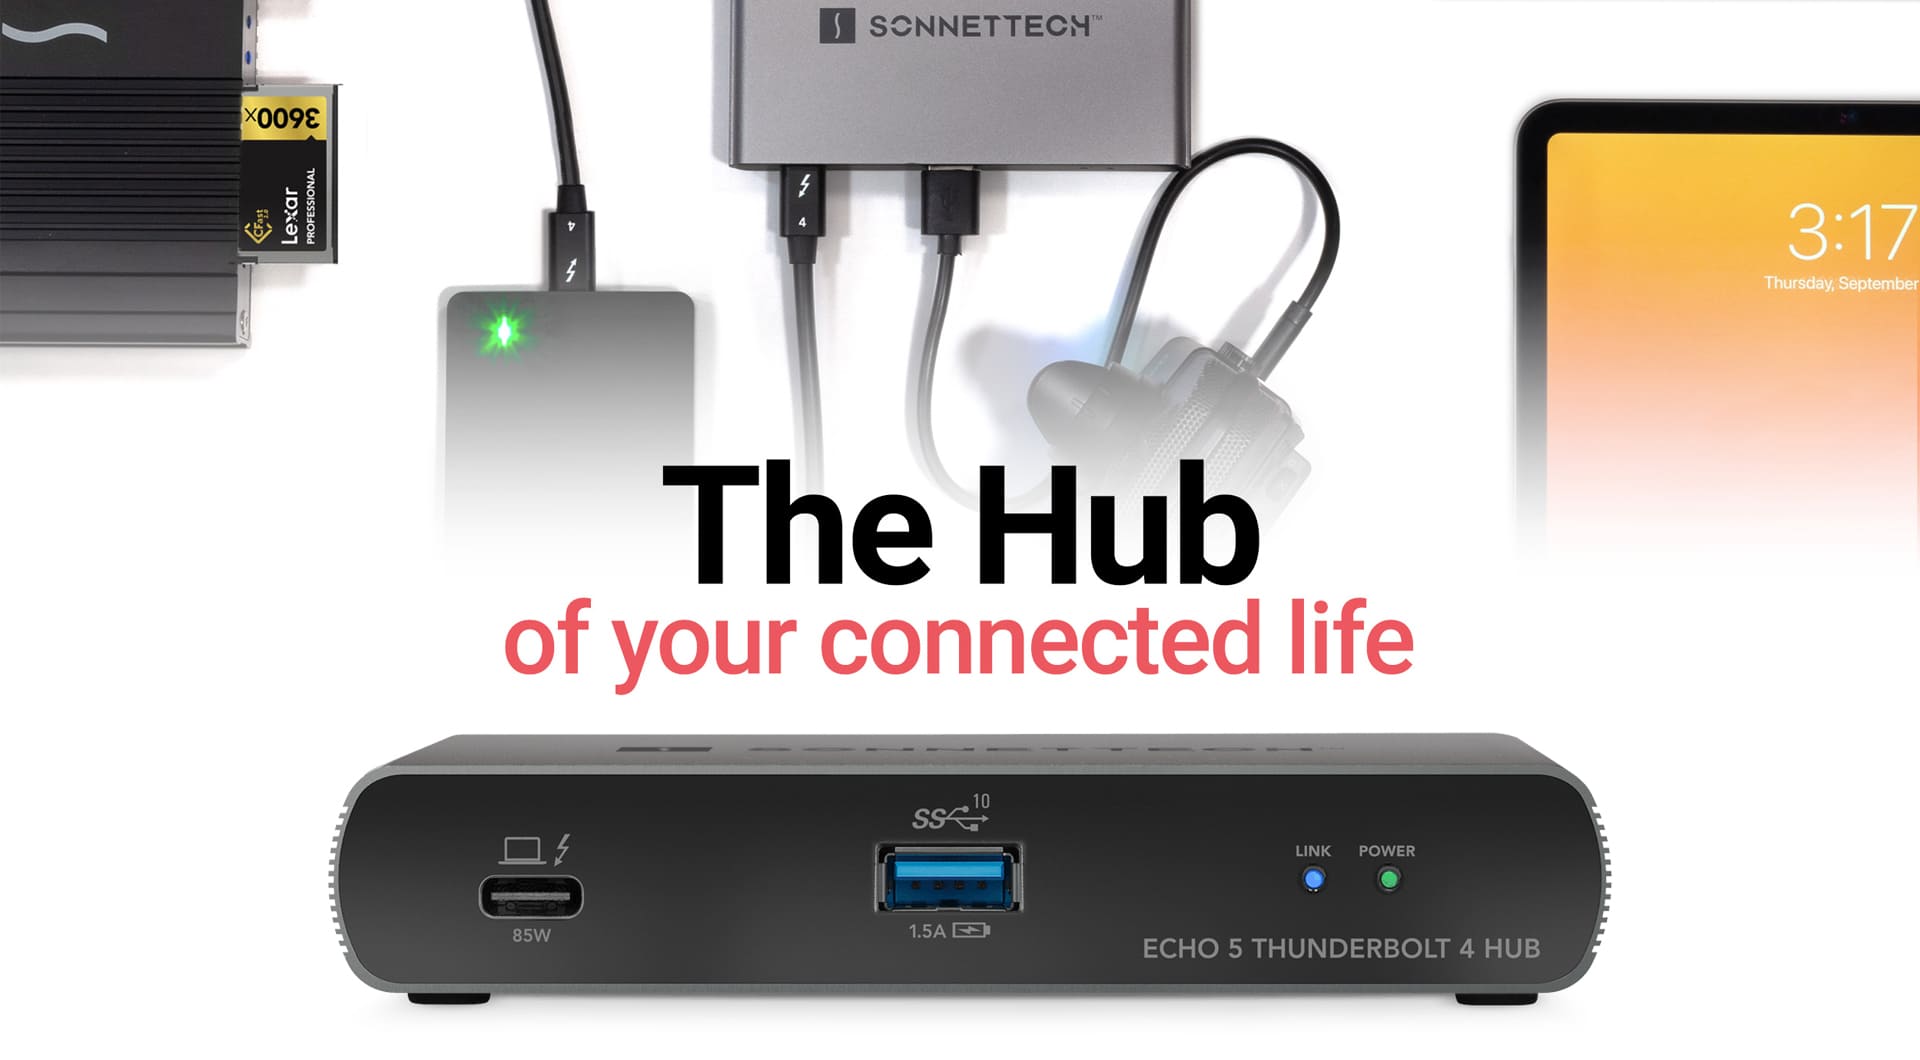 Echo 5 Thunderbolt 4 Hub – SONNETTECH